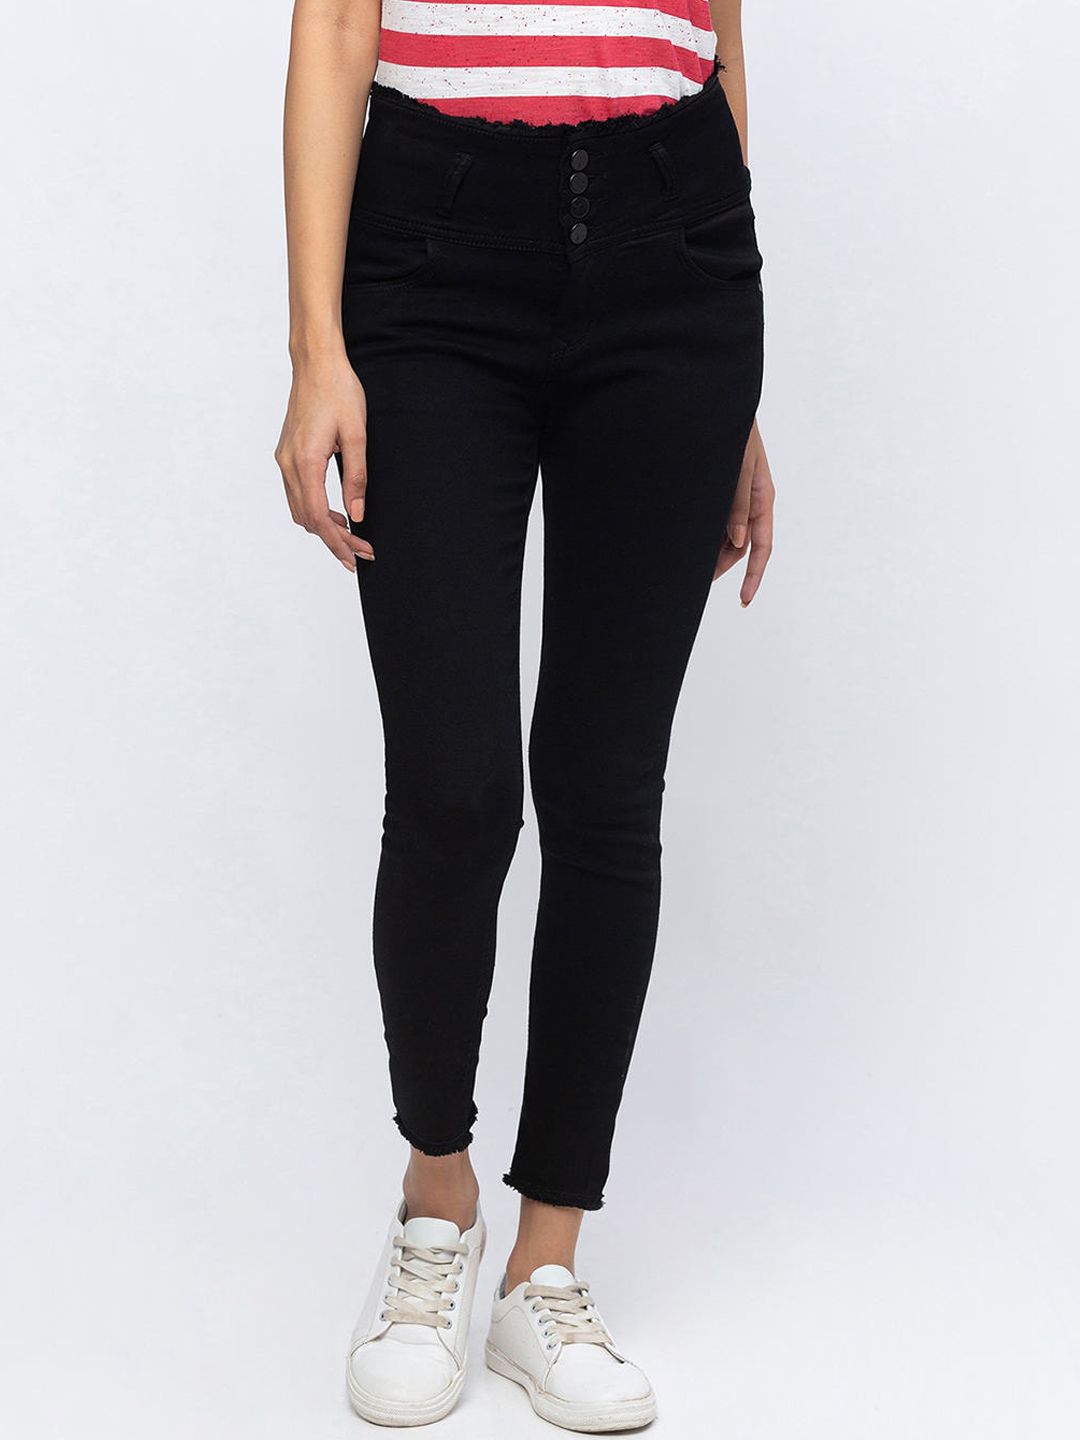 ZOLA Women Black Slim Fit Jeans Price in India